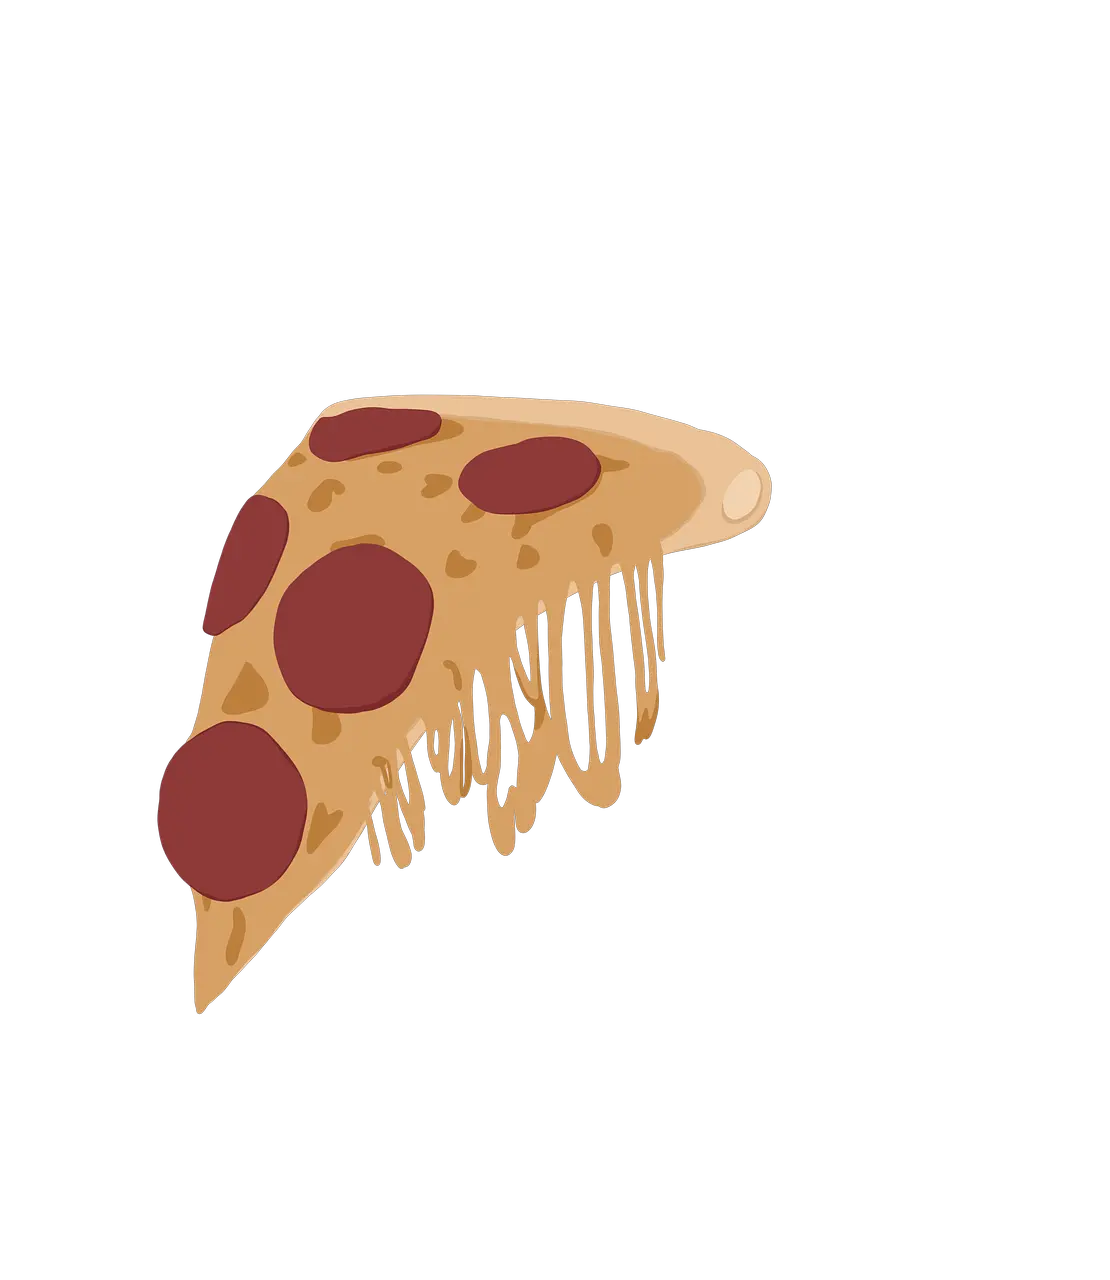 Pizza Food Design Free Image On Pixabay Food Digital Illustration Png Pizza Png